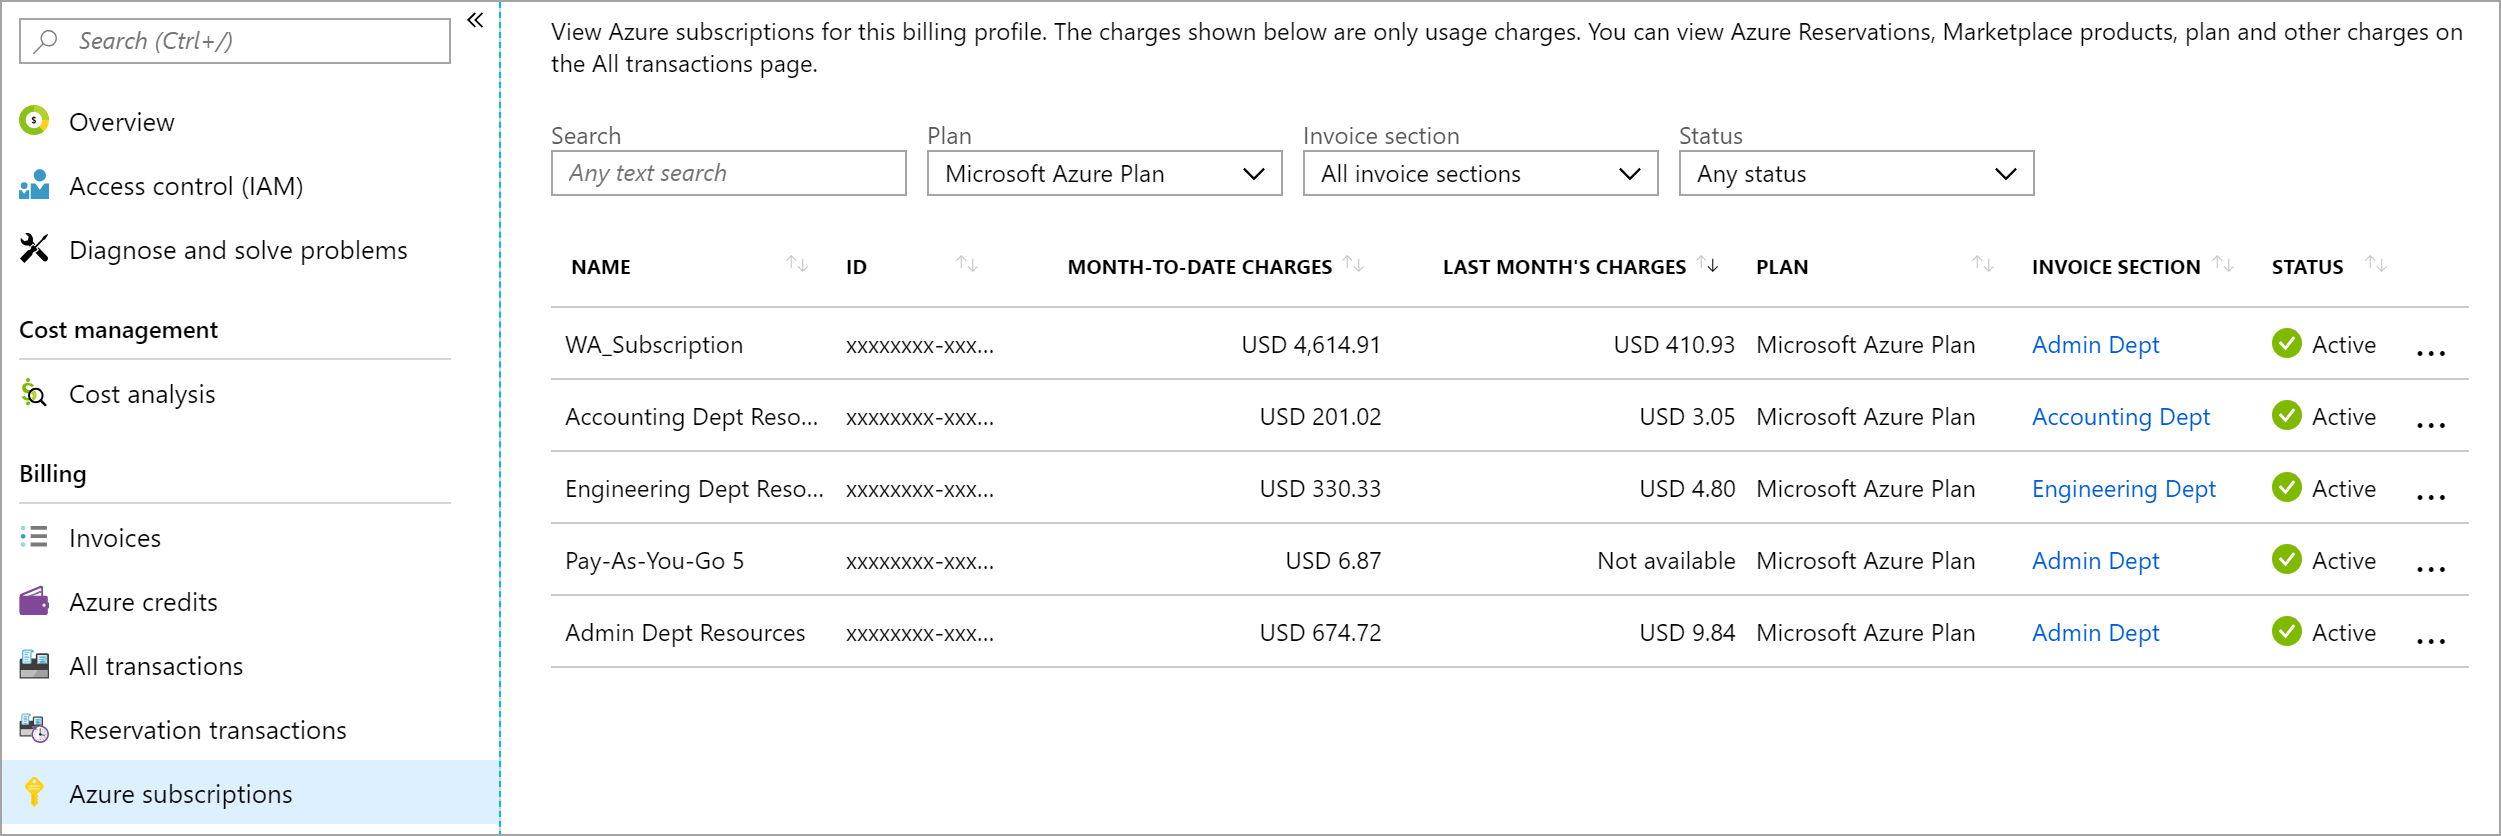 Снимок экрана: подписки с оплатой за месяц и оплатой за прошлый месяц.